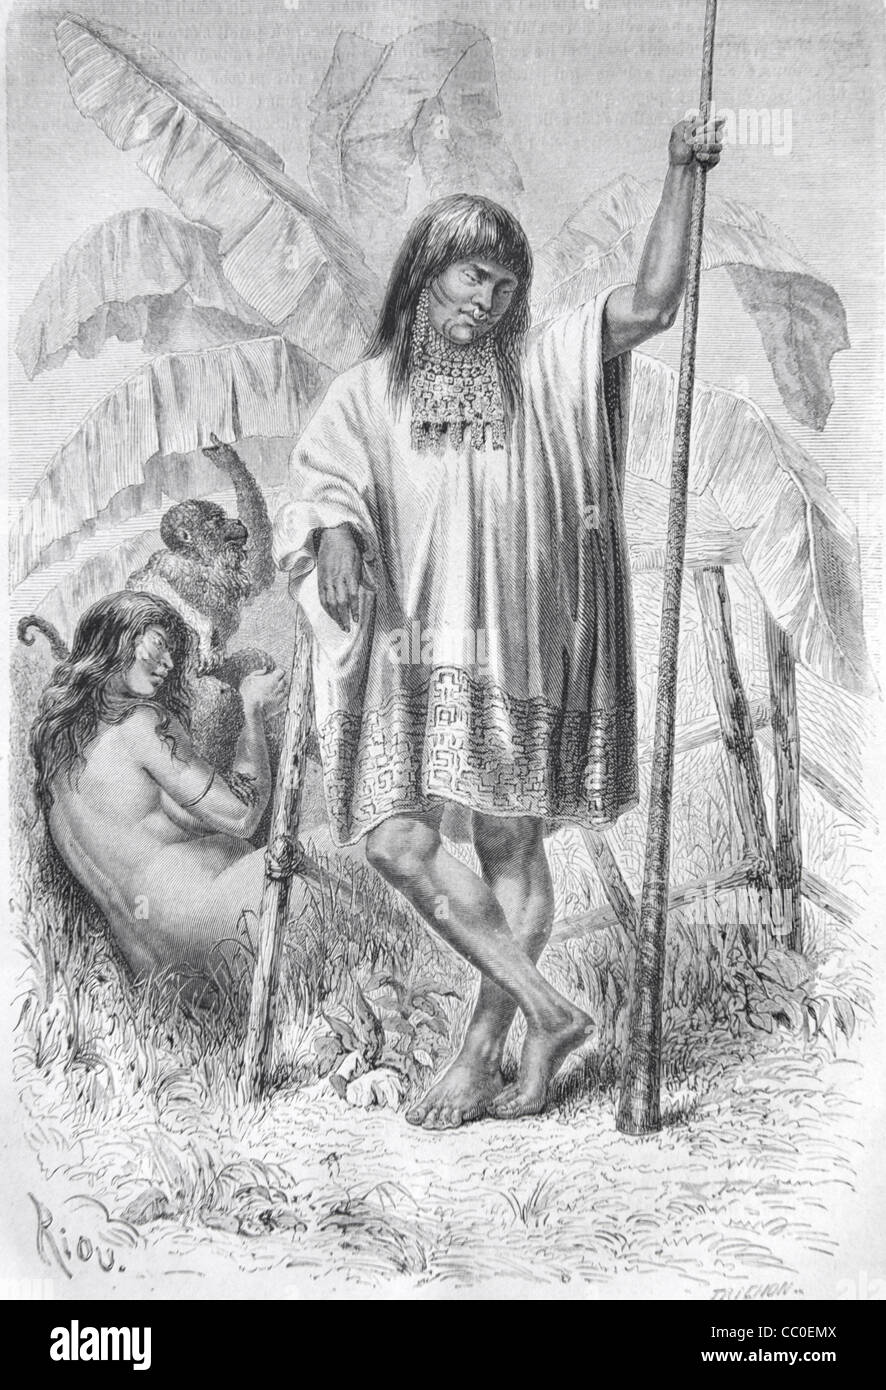 Shipibo ou Conibo Amérindien ou amérindien de l'Amazonie péruvienne, Pérou, Amérique du Sud. 1864 gravure ou illustration ancienne Banque D'Images